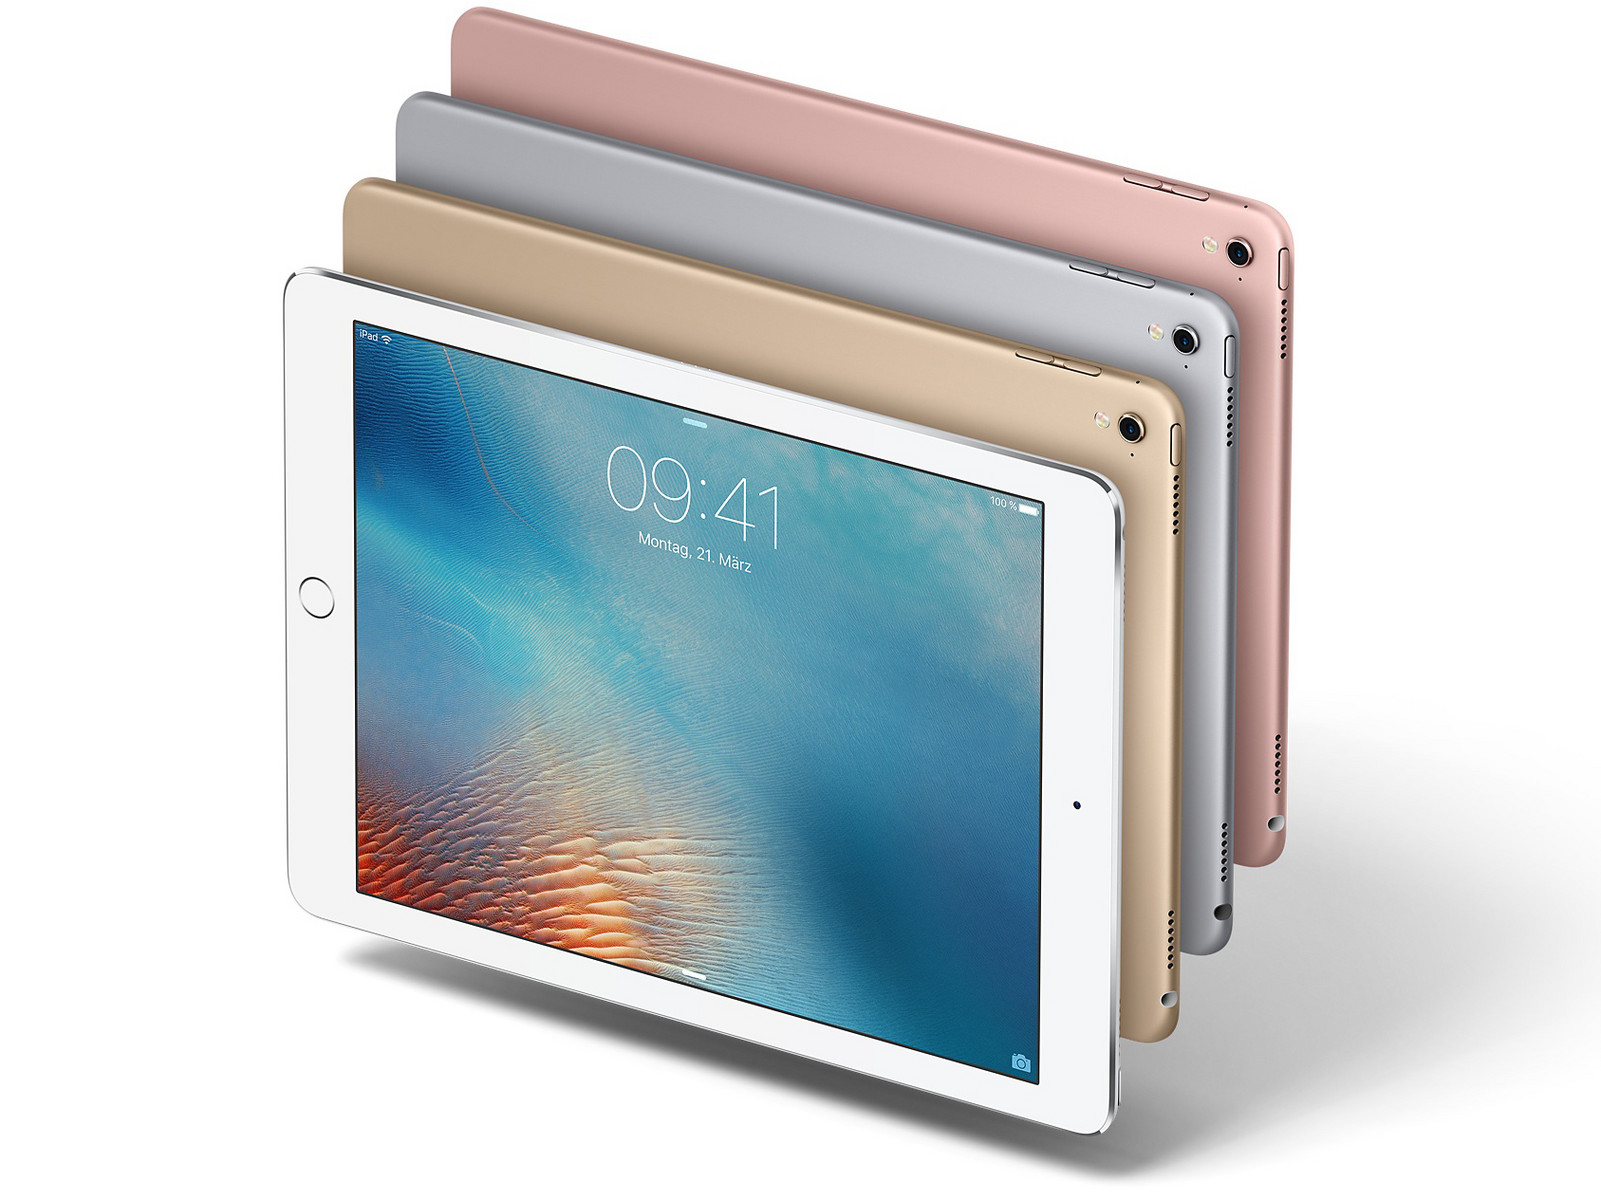 Apple iPad Pro 9.7 - Notebookcheck.net External Reviews